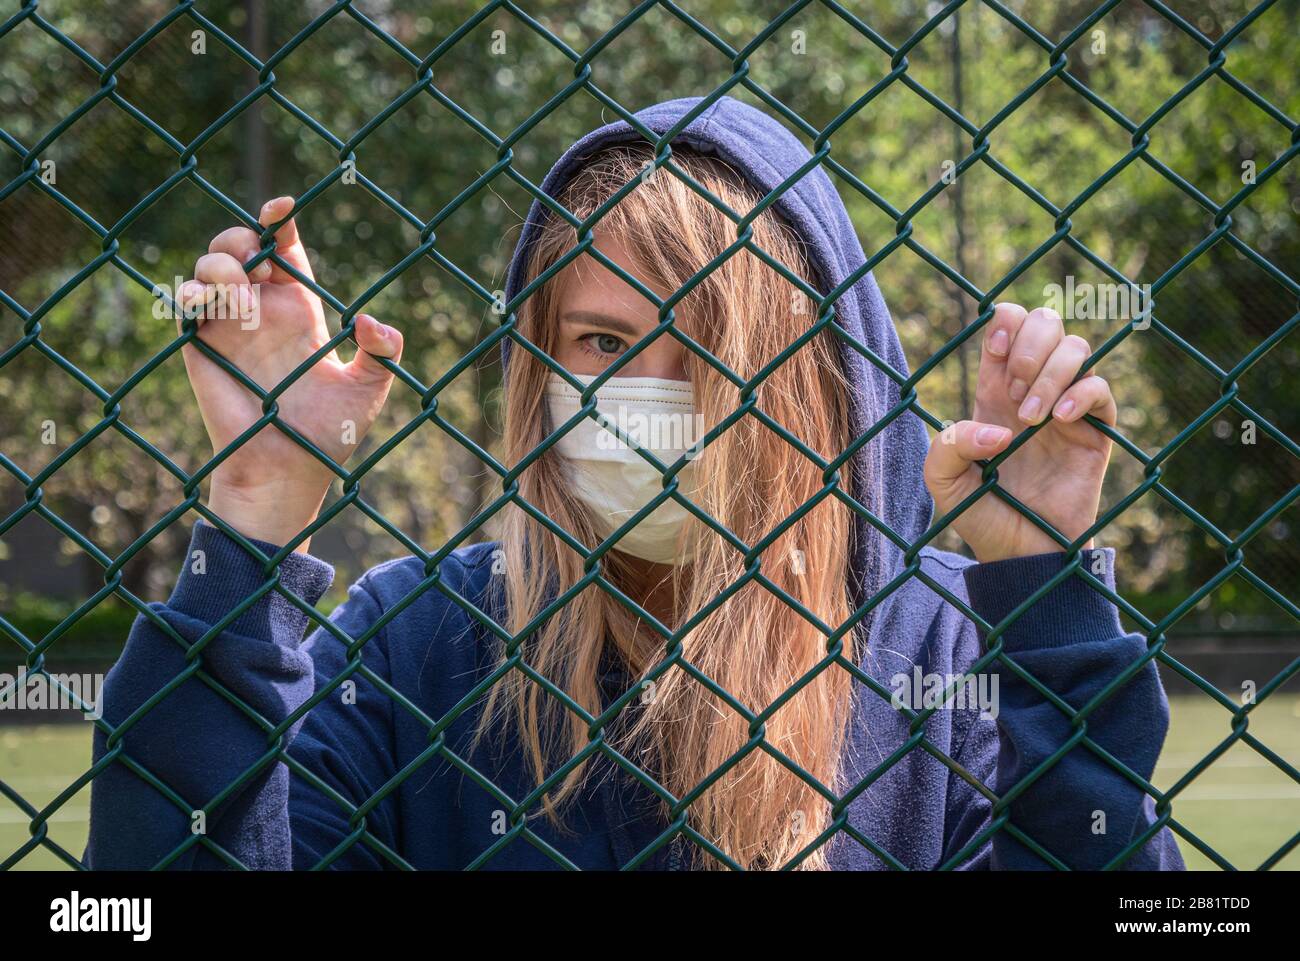 Bordure fermée. Quarantaine. Une jeune femme portant un masque de protection se trouve derrière la bordure de clôture. COVID-19 virus de la pandémie d'infection du coronavirus. Banque D'Images